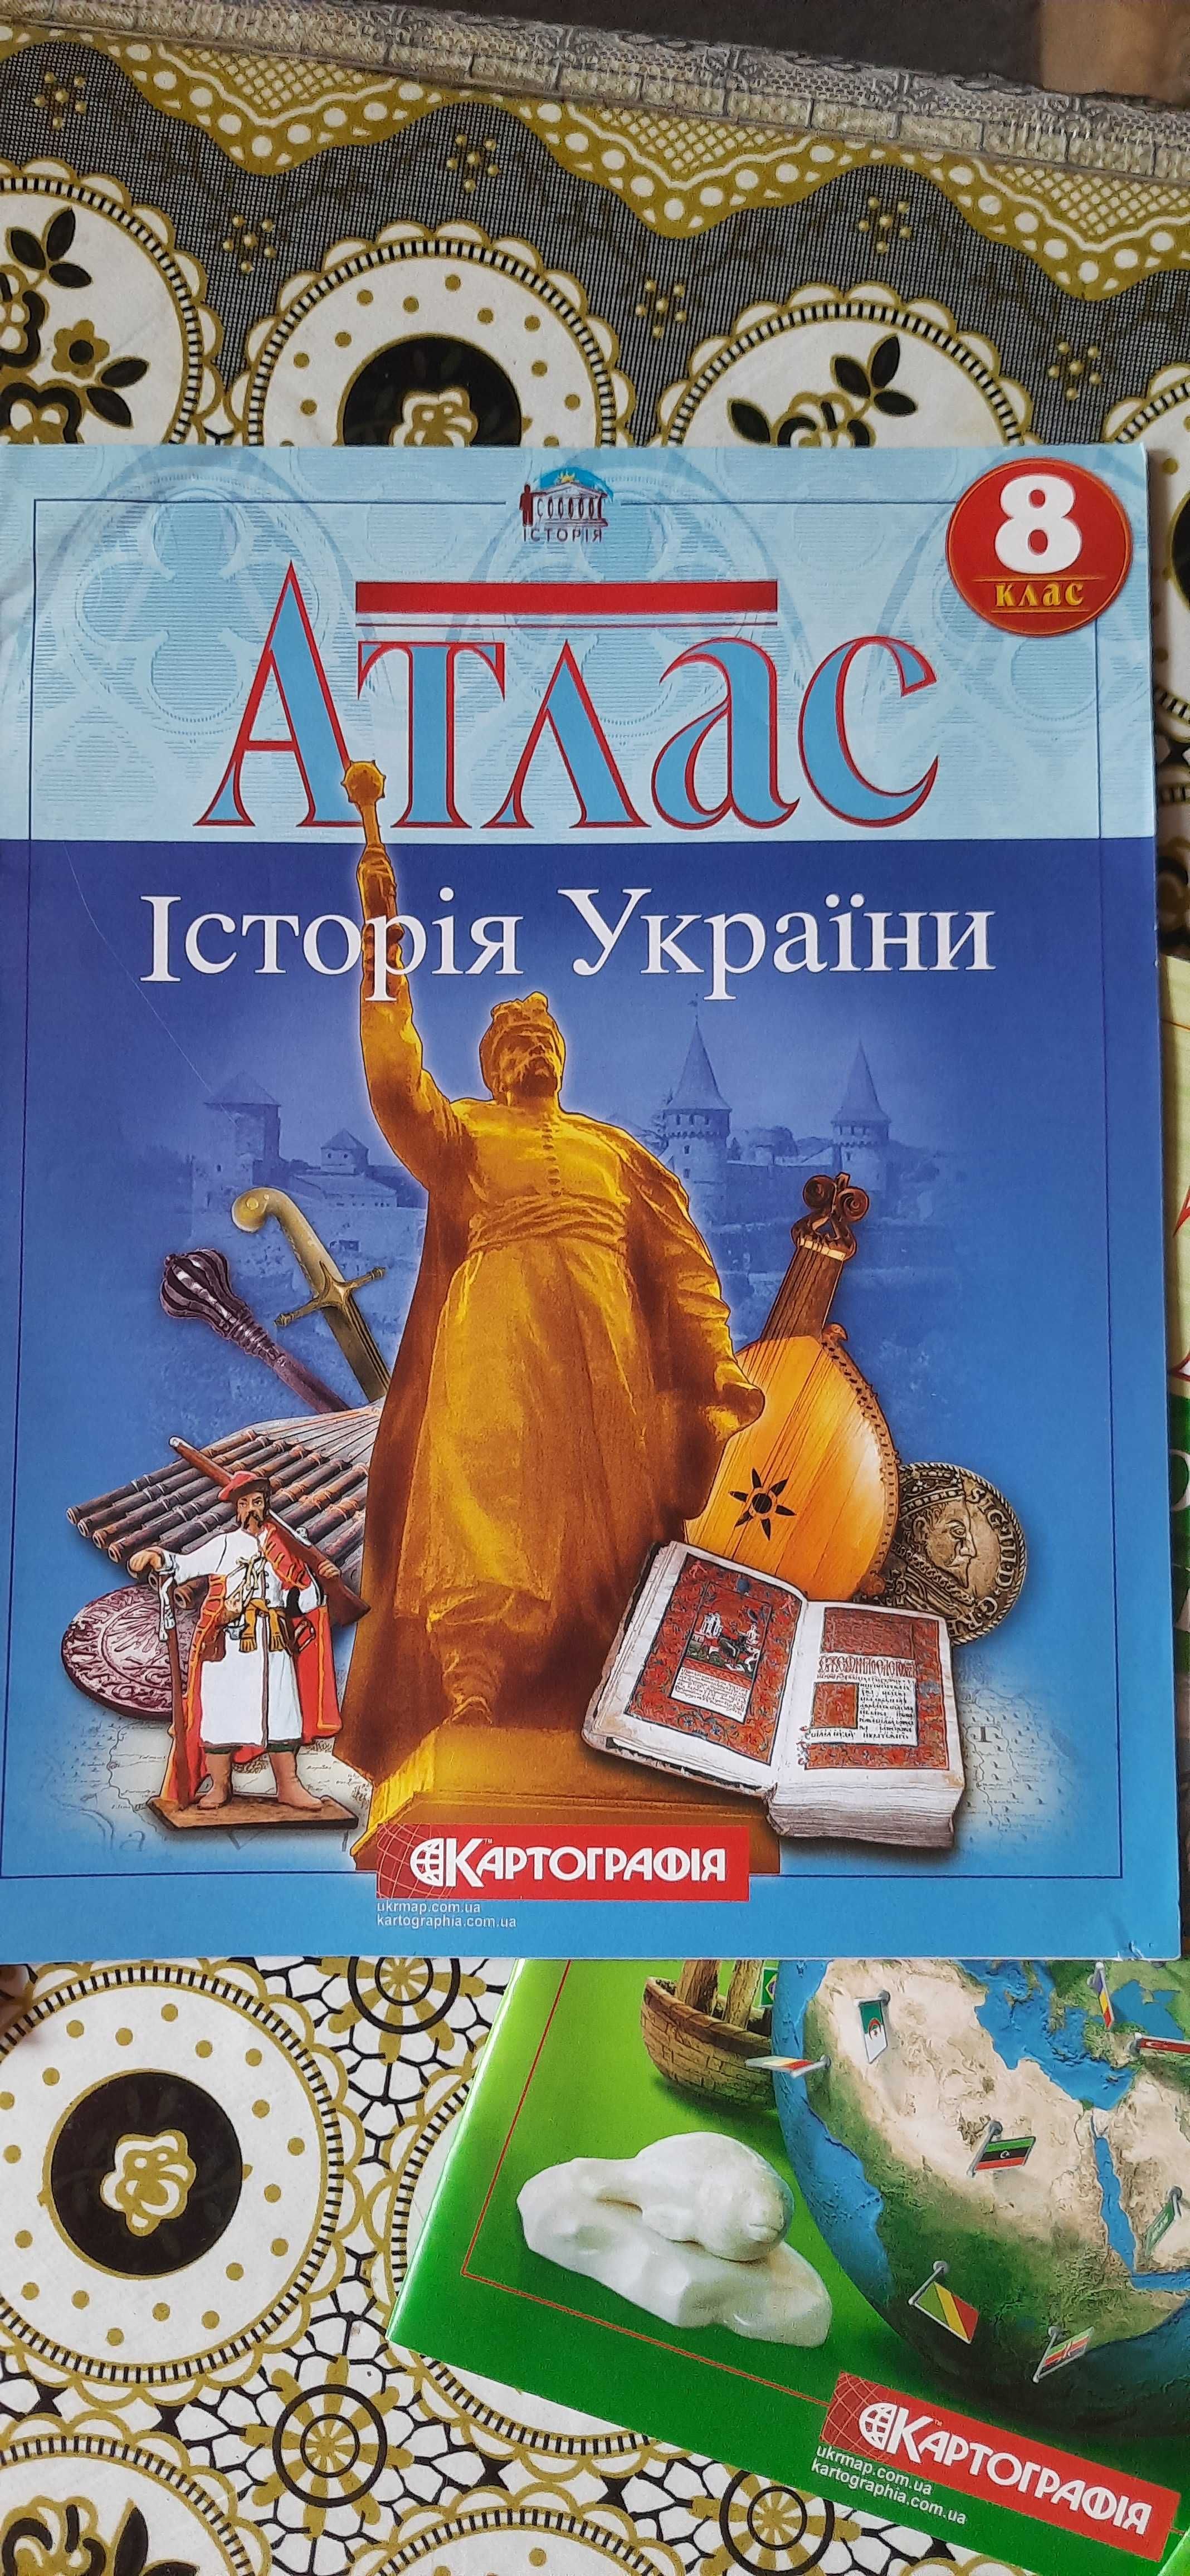 Атлас України  7,8 клас.Атлас Історії України